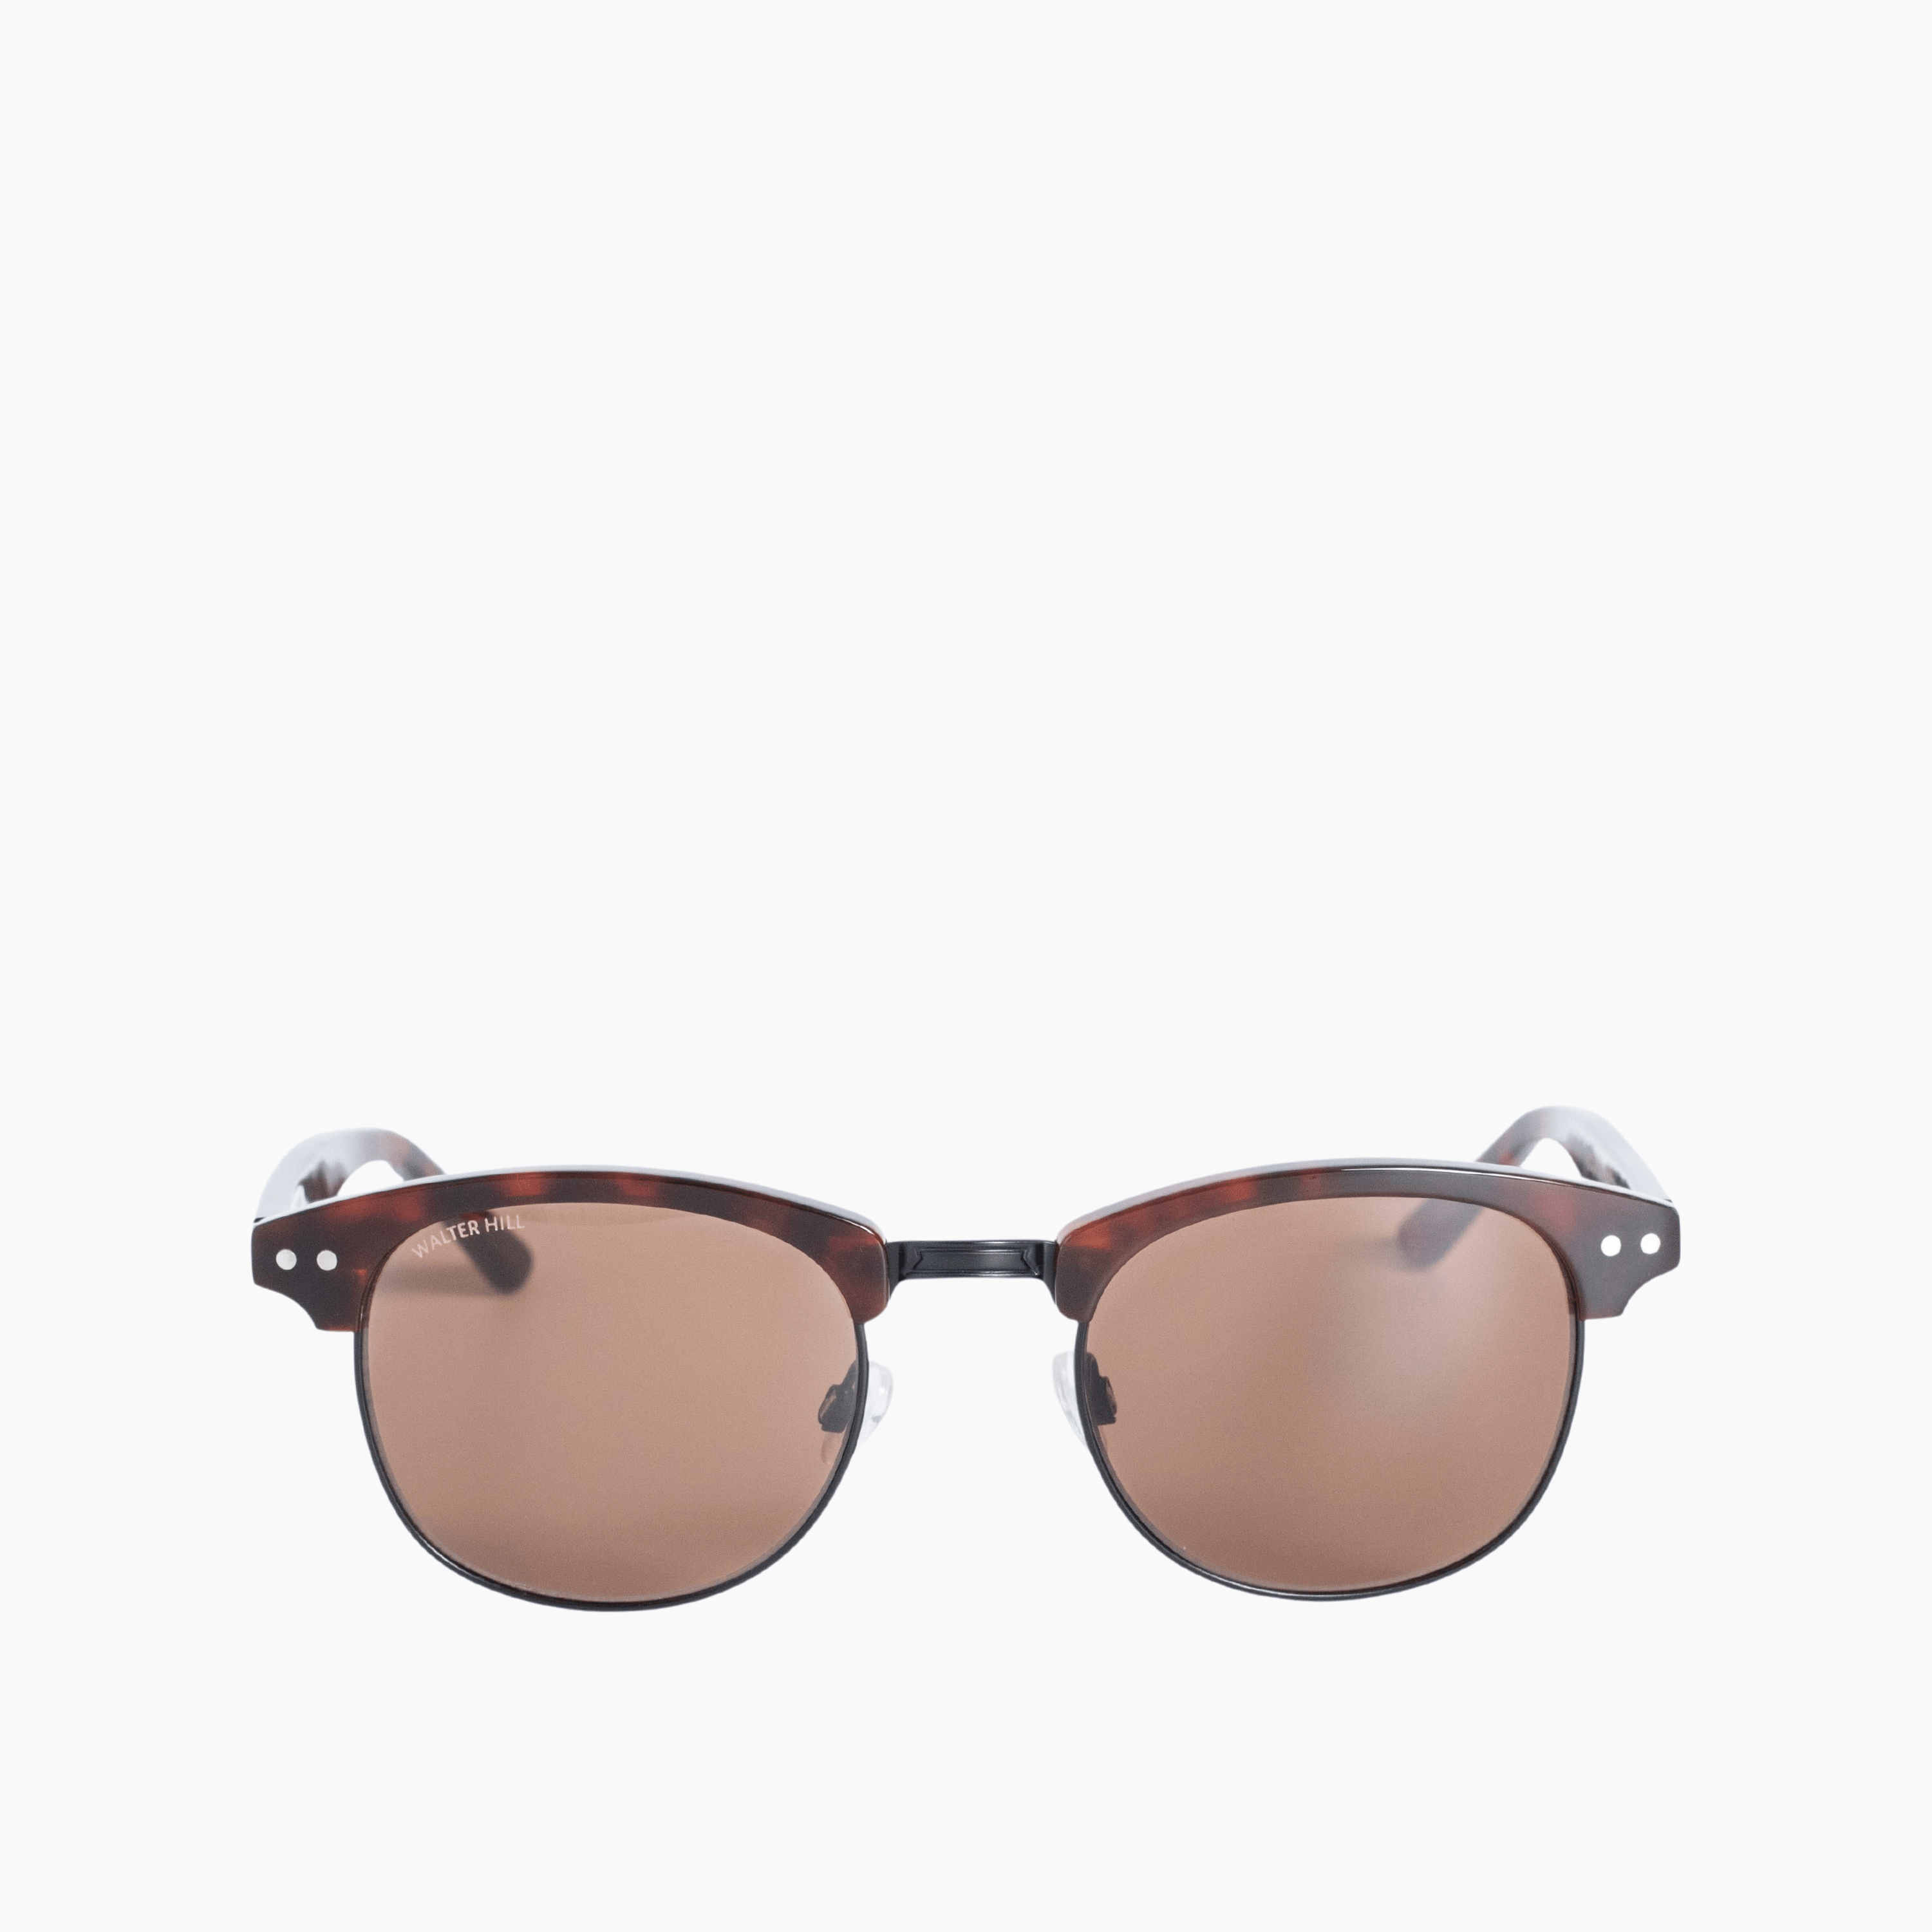 Walter Hill Sunglasses Tortoise / Standard / Polarized Cat.3 ASPEN - Tortoise